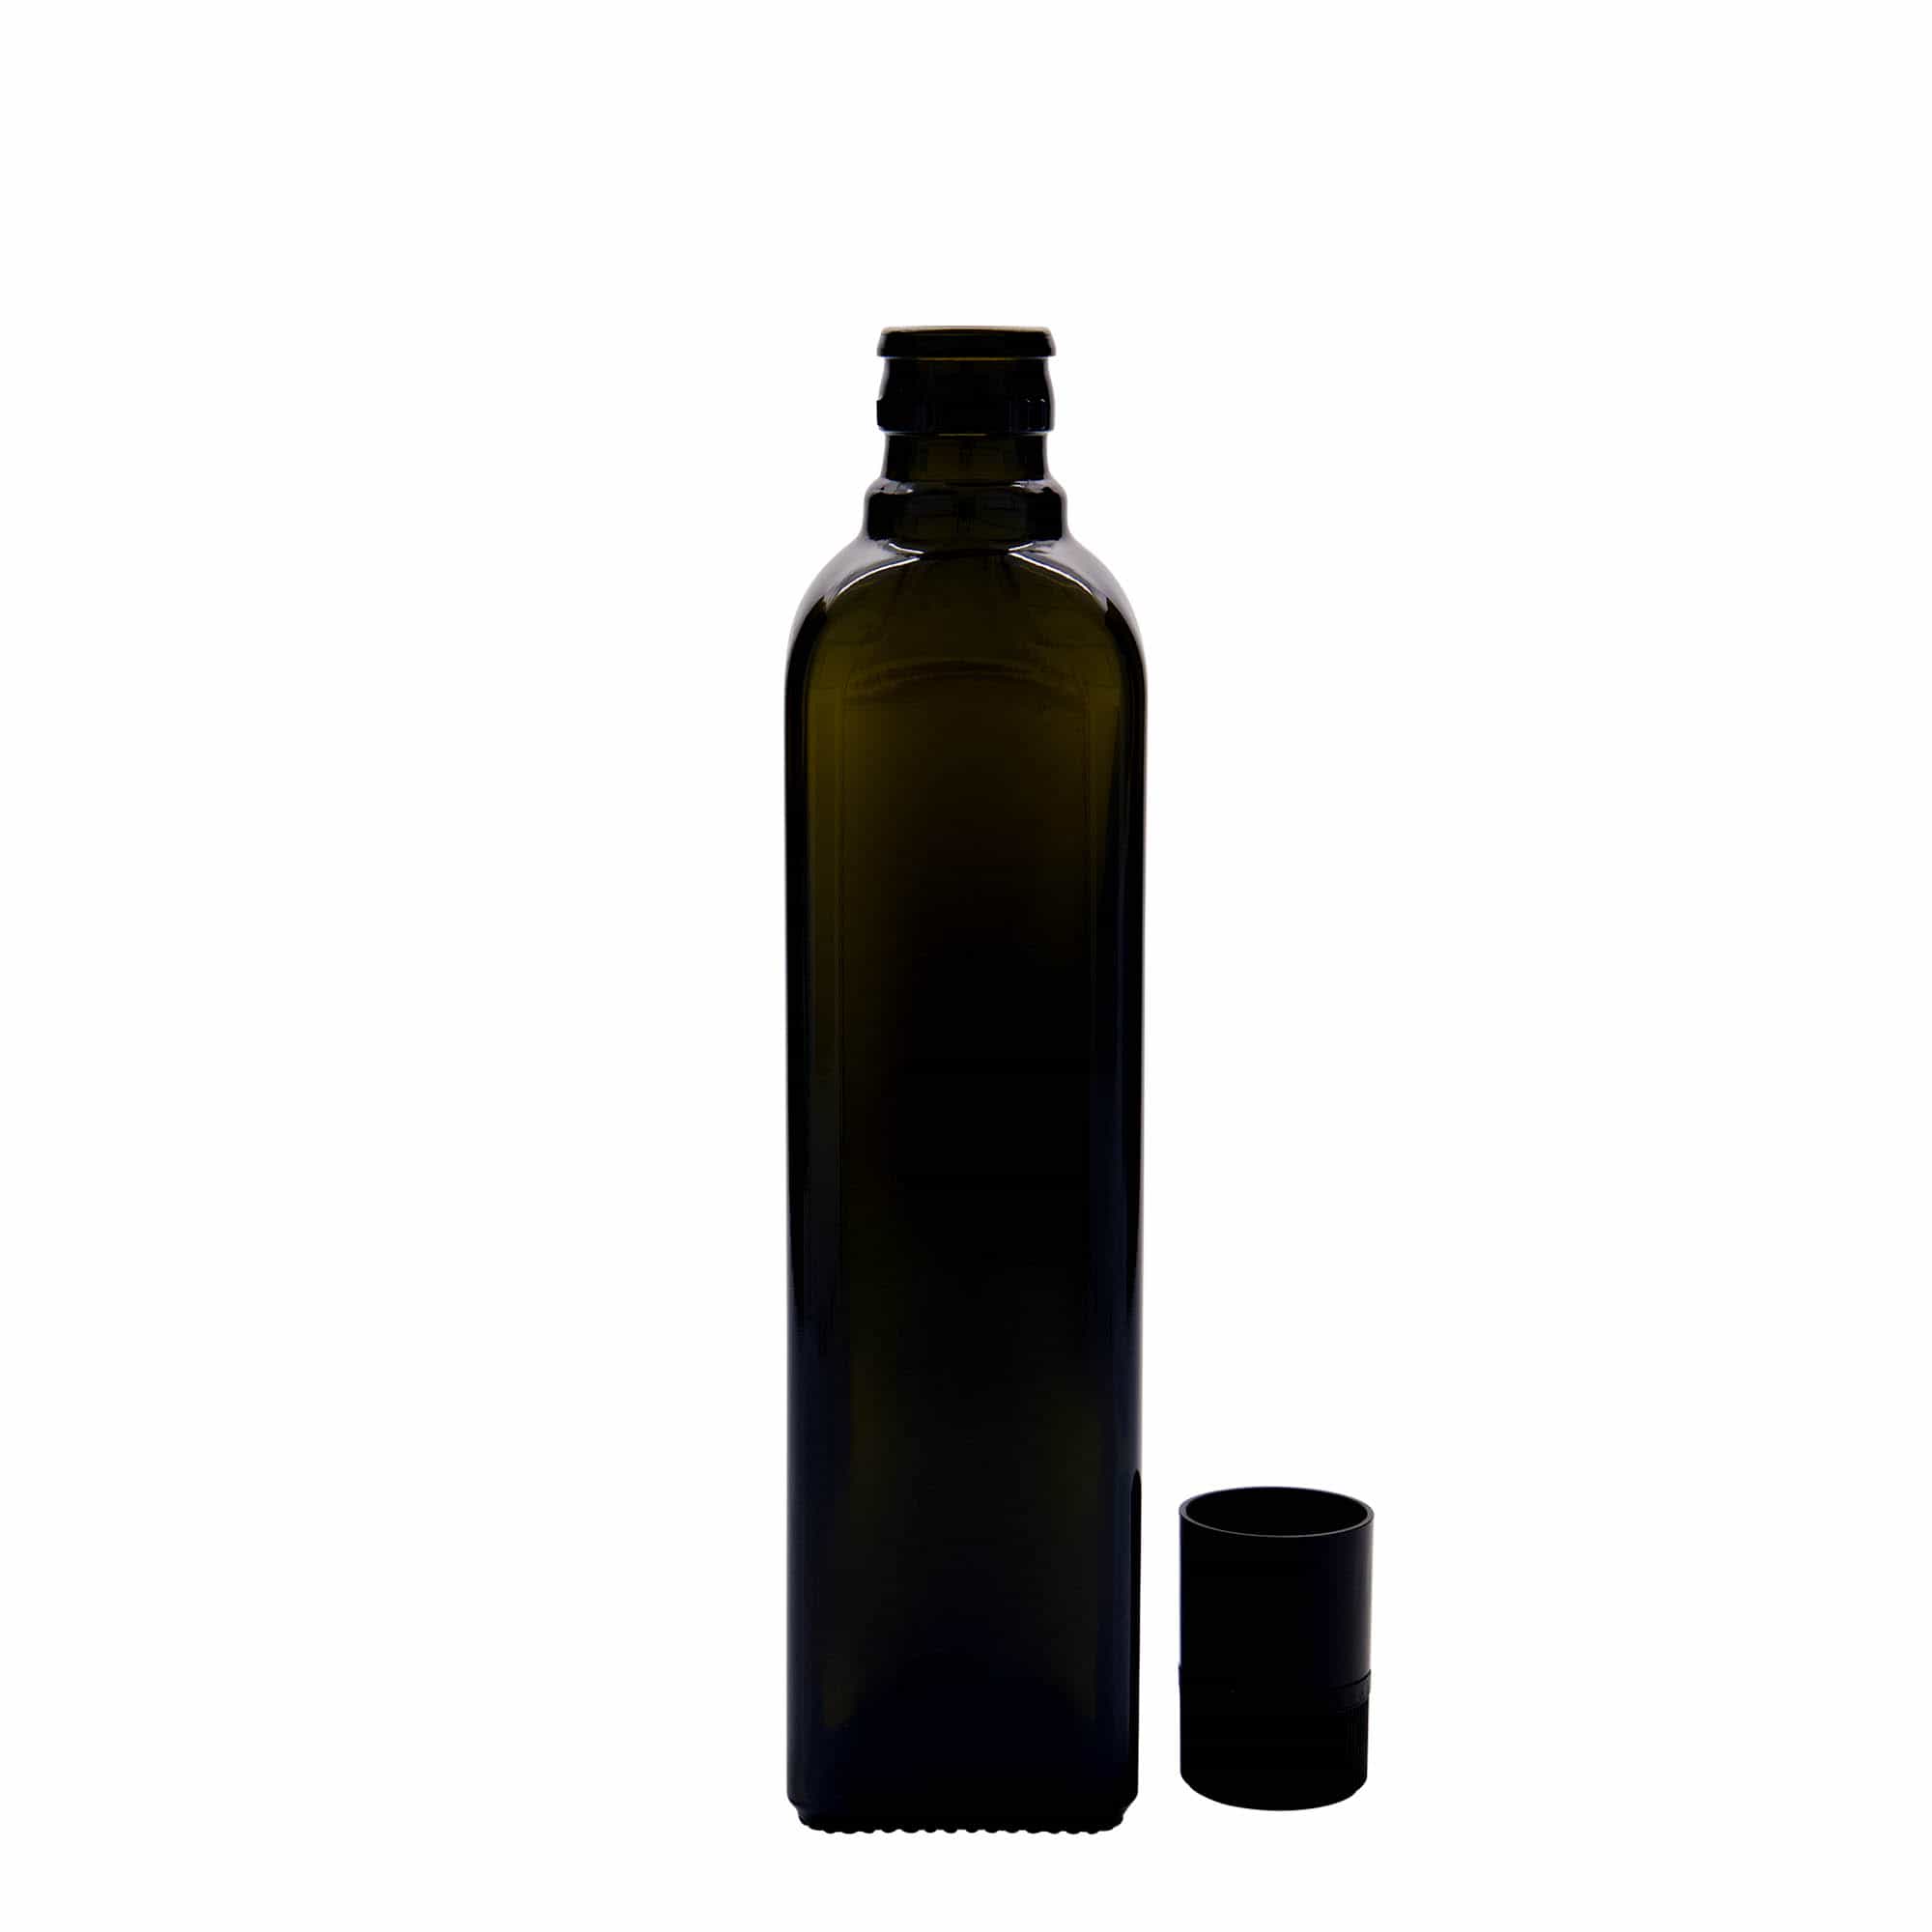 Azijn-/oliefles 'Quadra', 500 ml, glas, vierkant, antiekgroen, monding: DOP